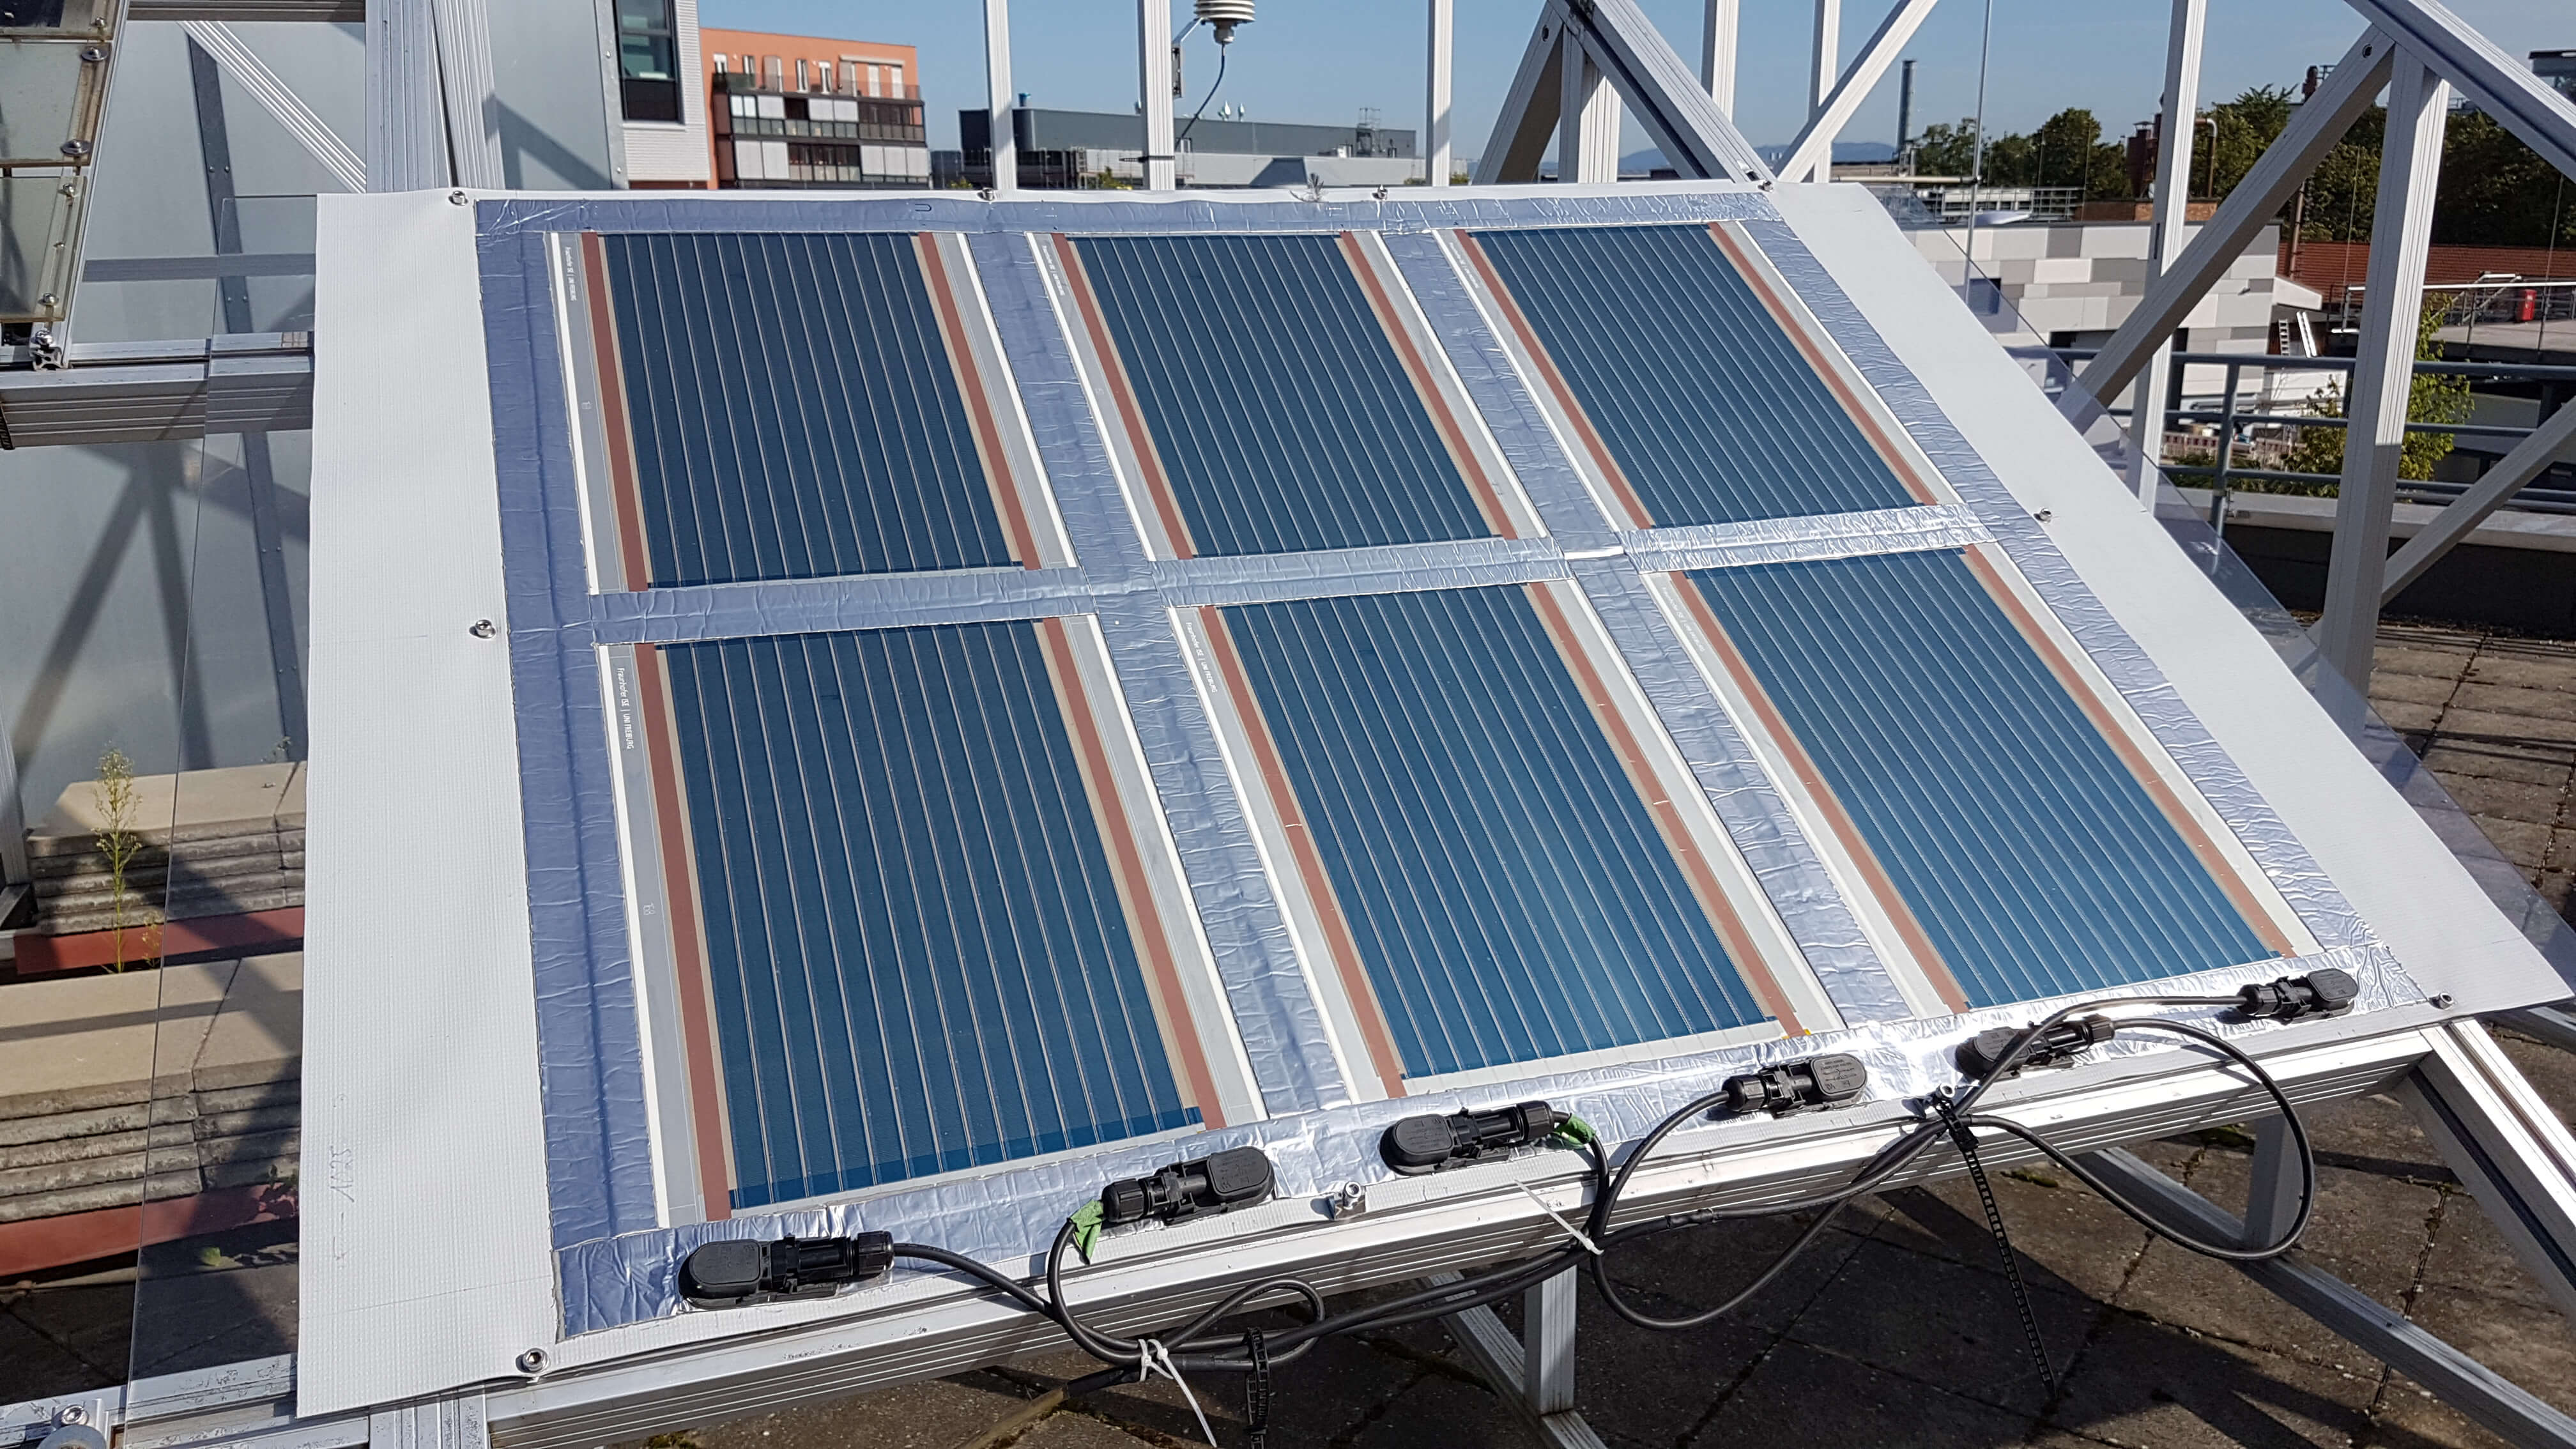 Demonstrator solar modules